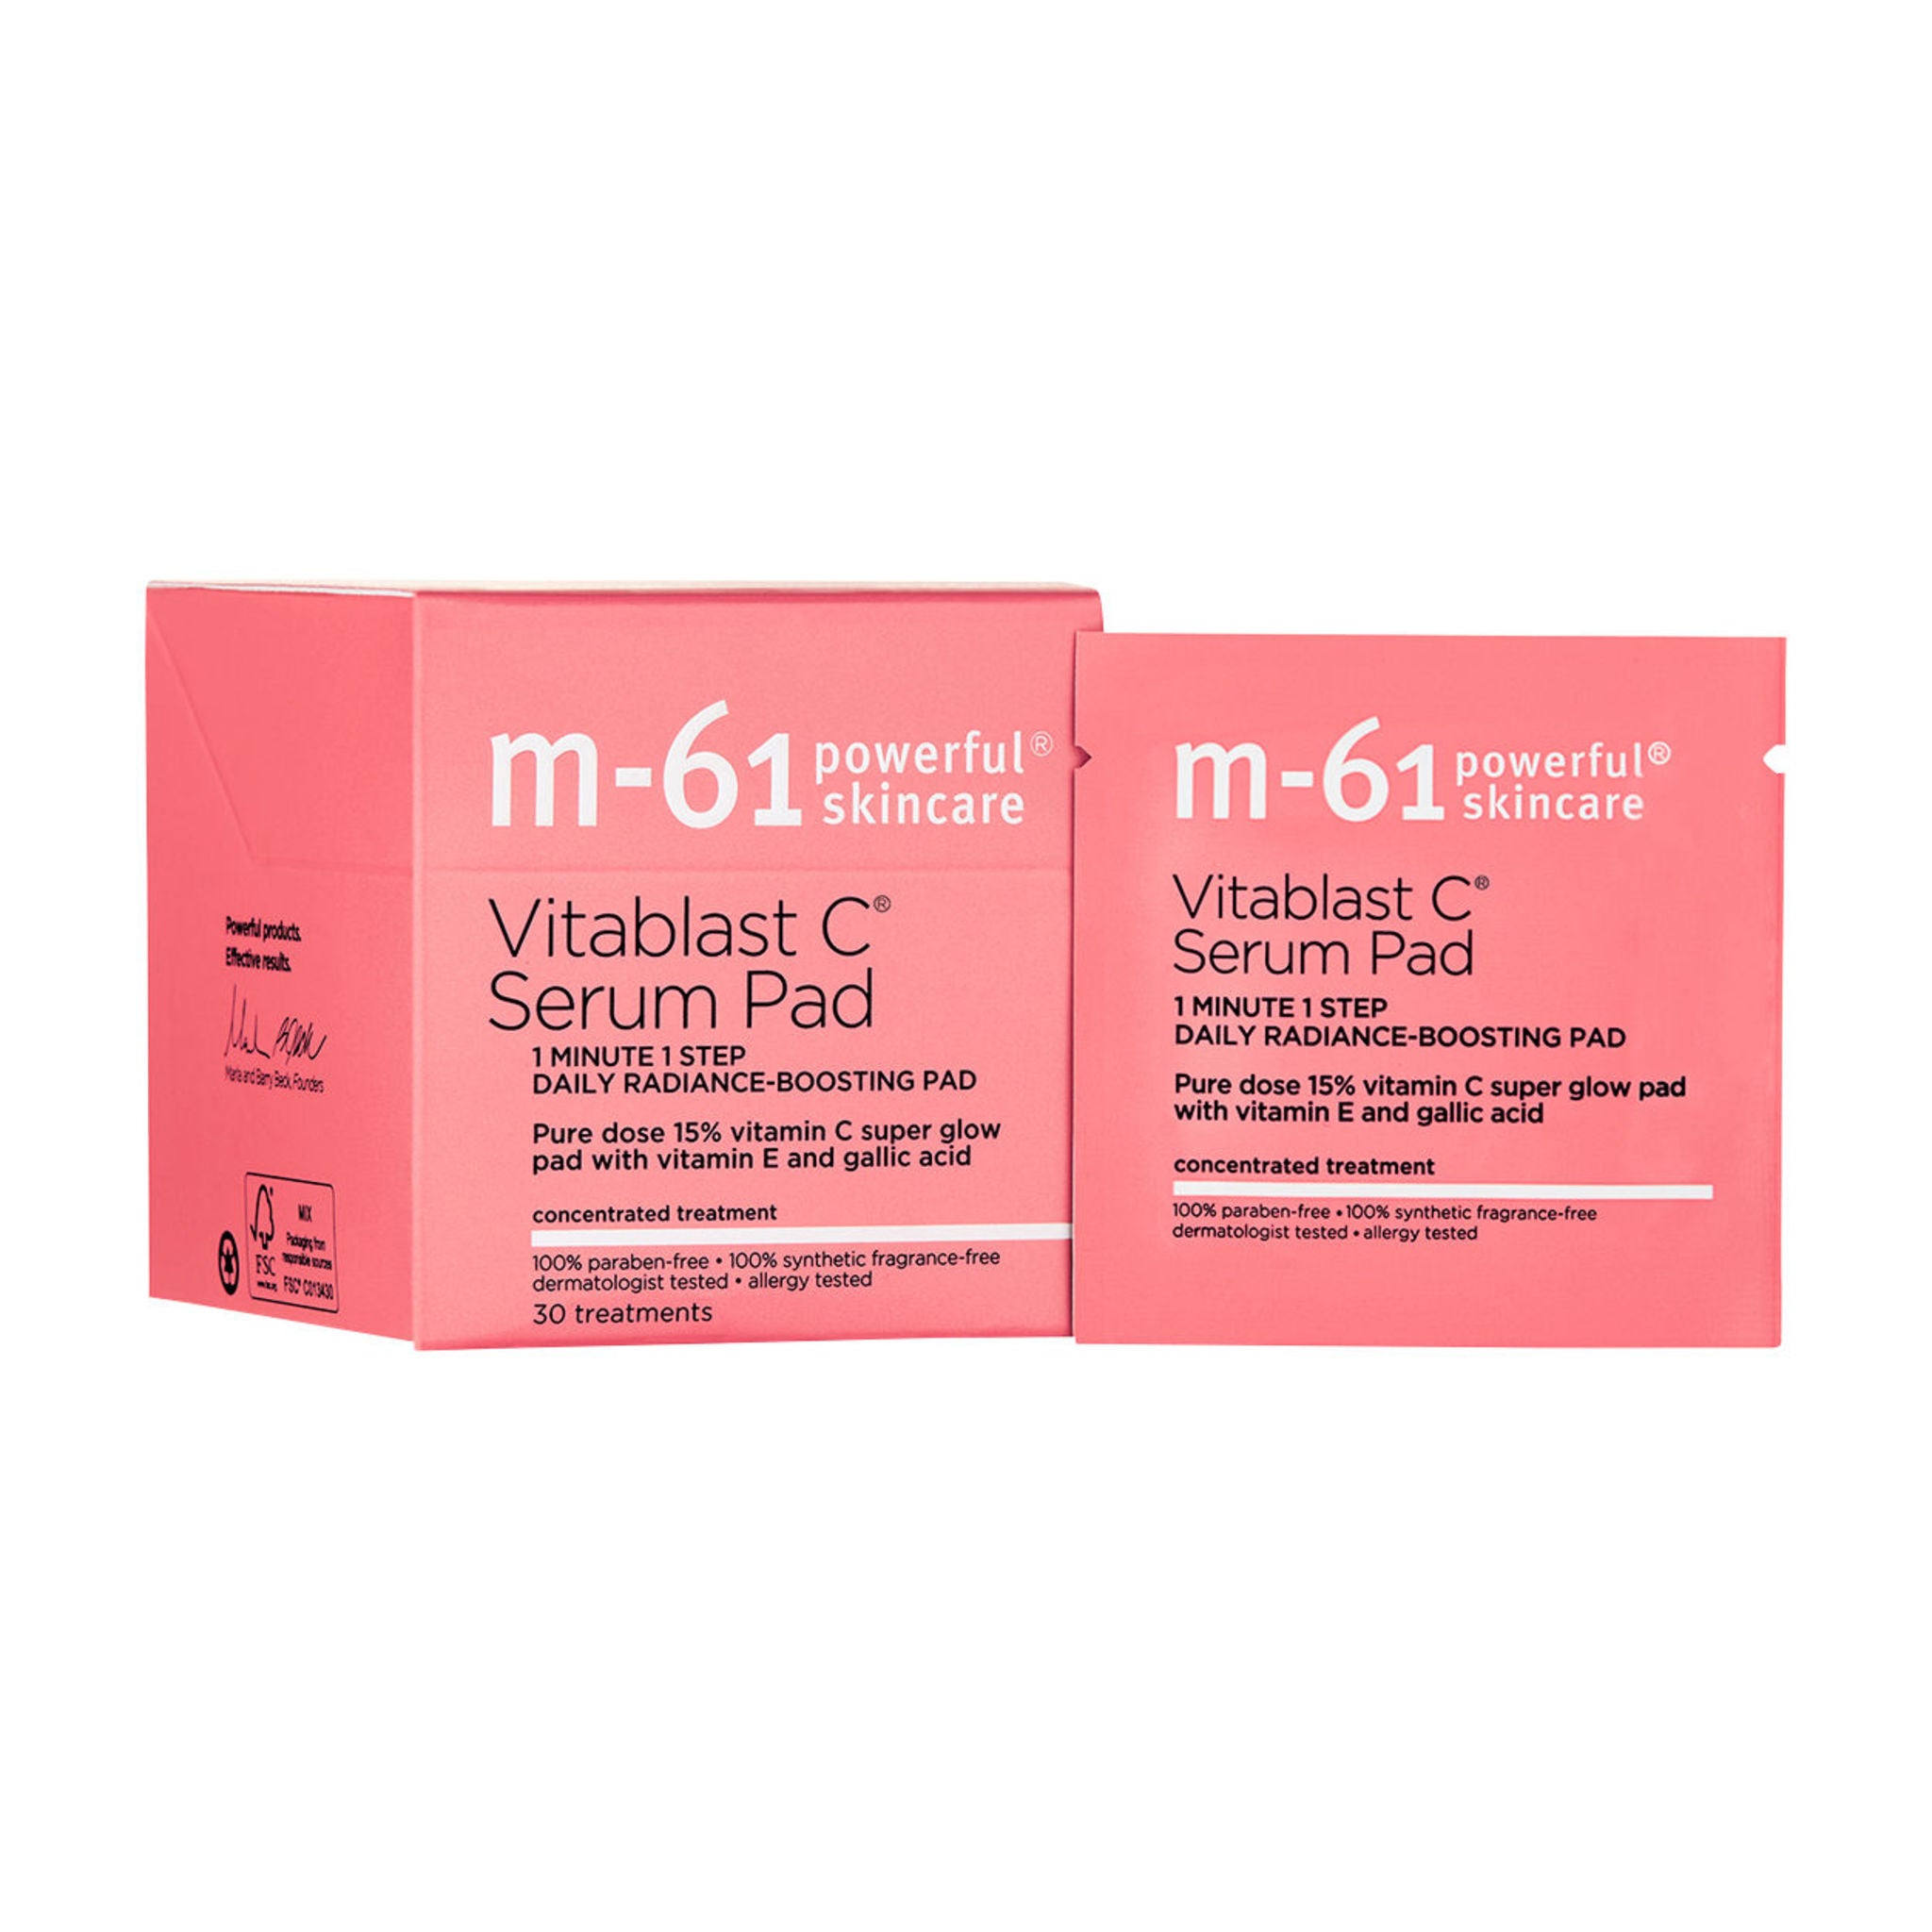 M-61 Vitablast C Serum Pad Size variant: 30 treatments main image.